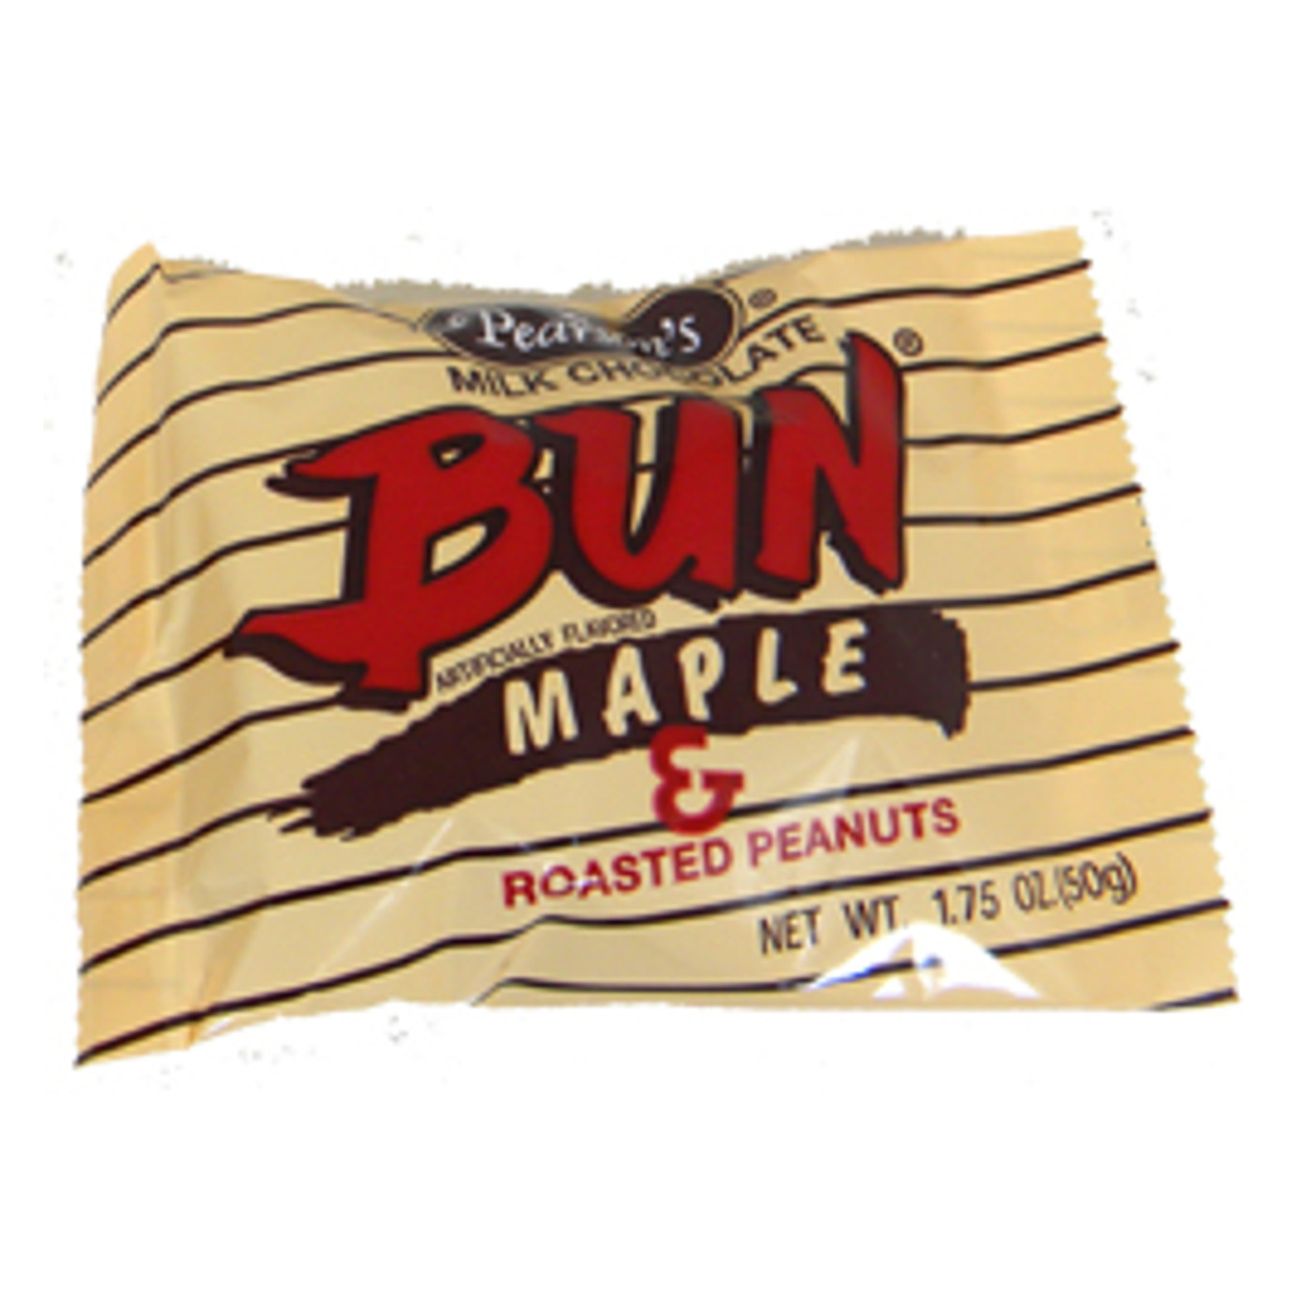 Pearson's Bun Maple Candy Bar 1.75oz - 24ct